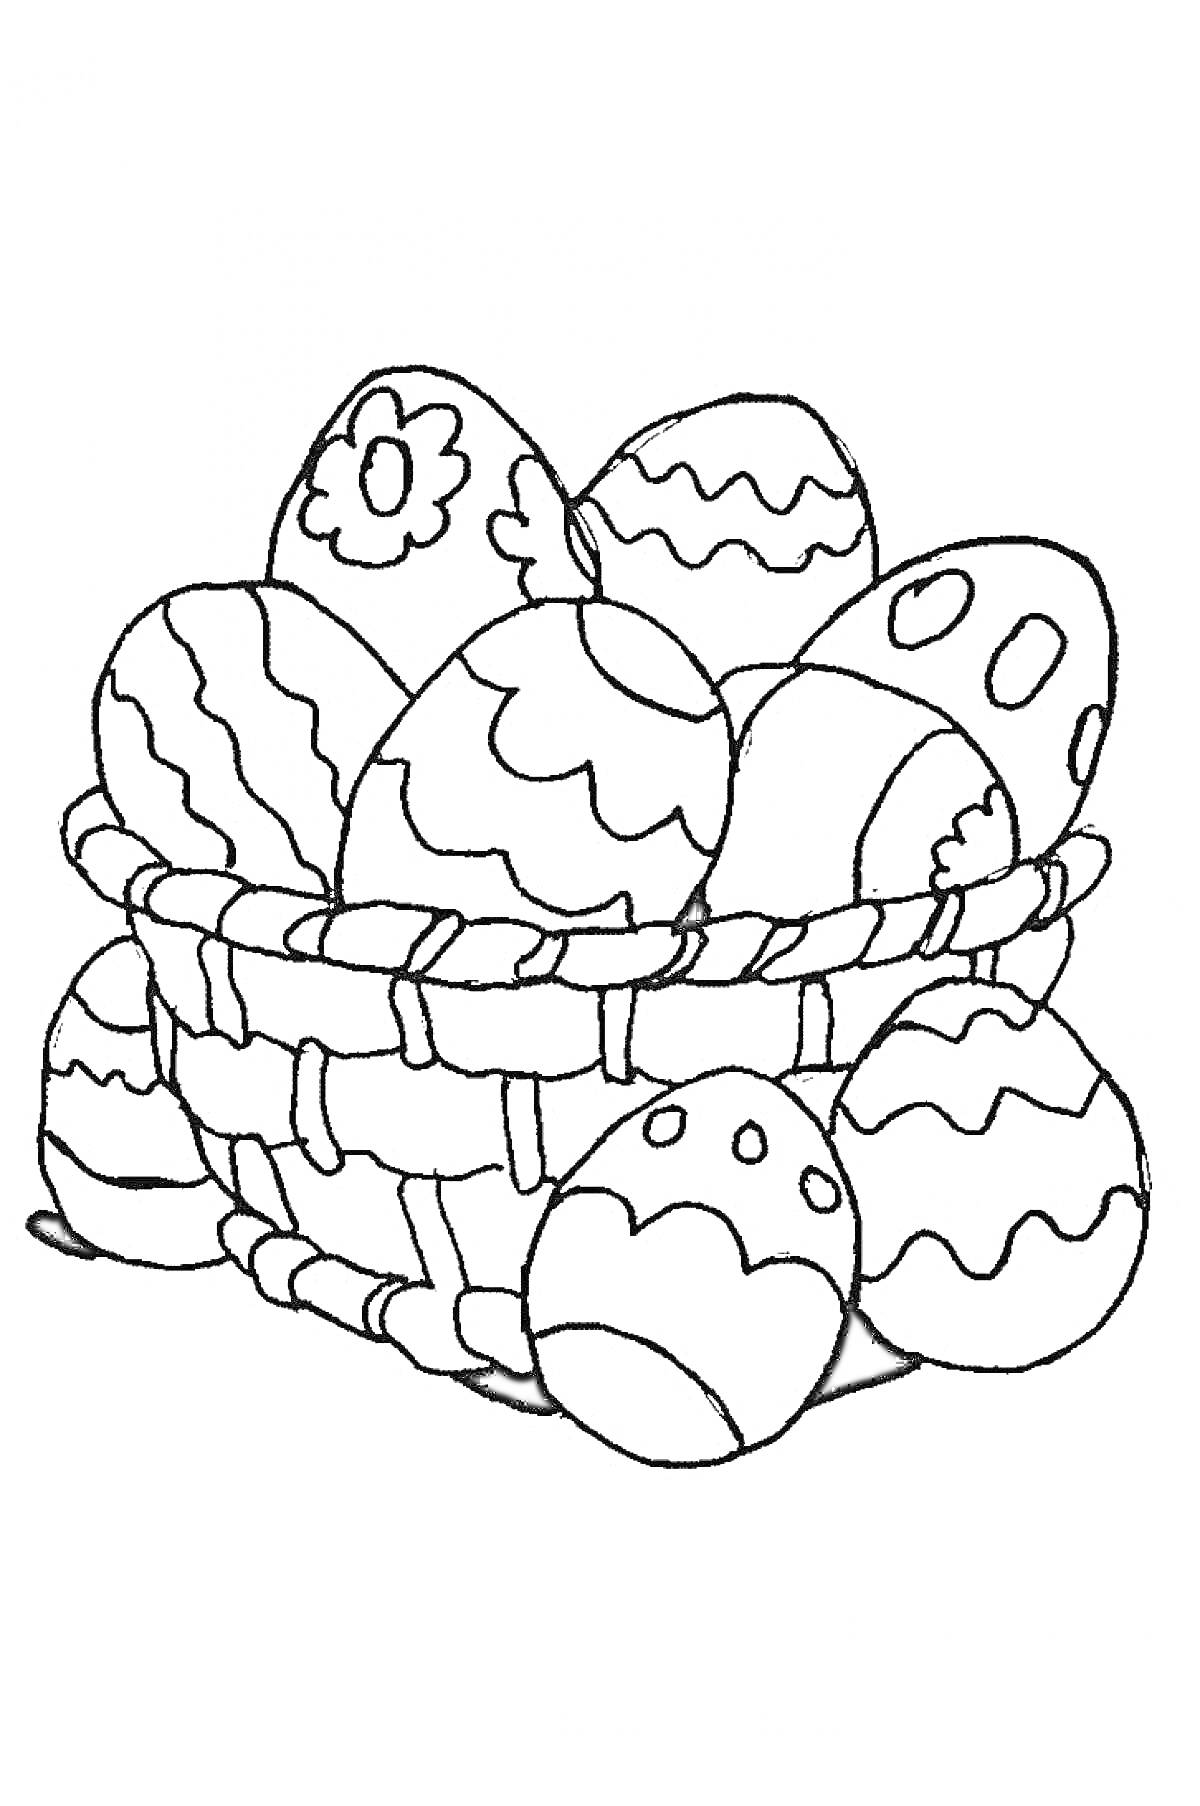 Пасхальная корзинка с украшенными яйцами